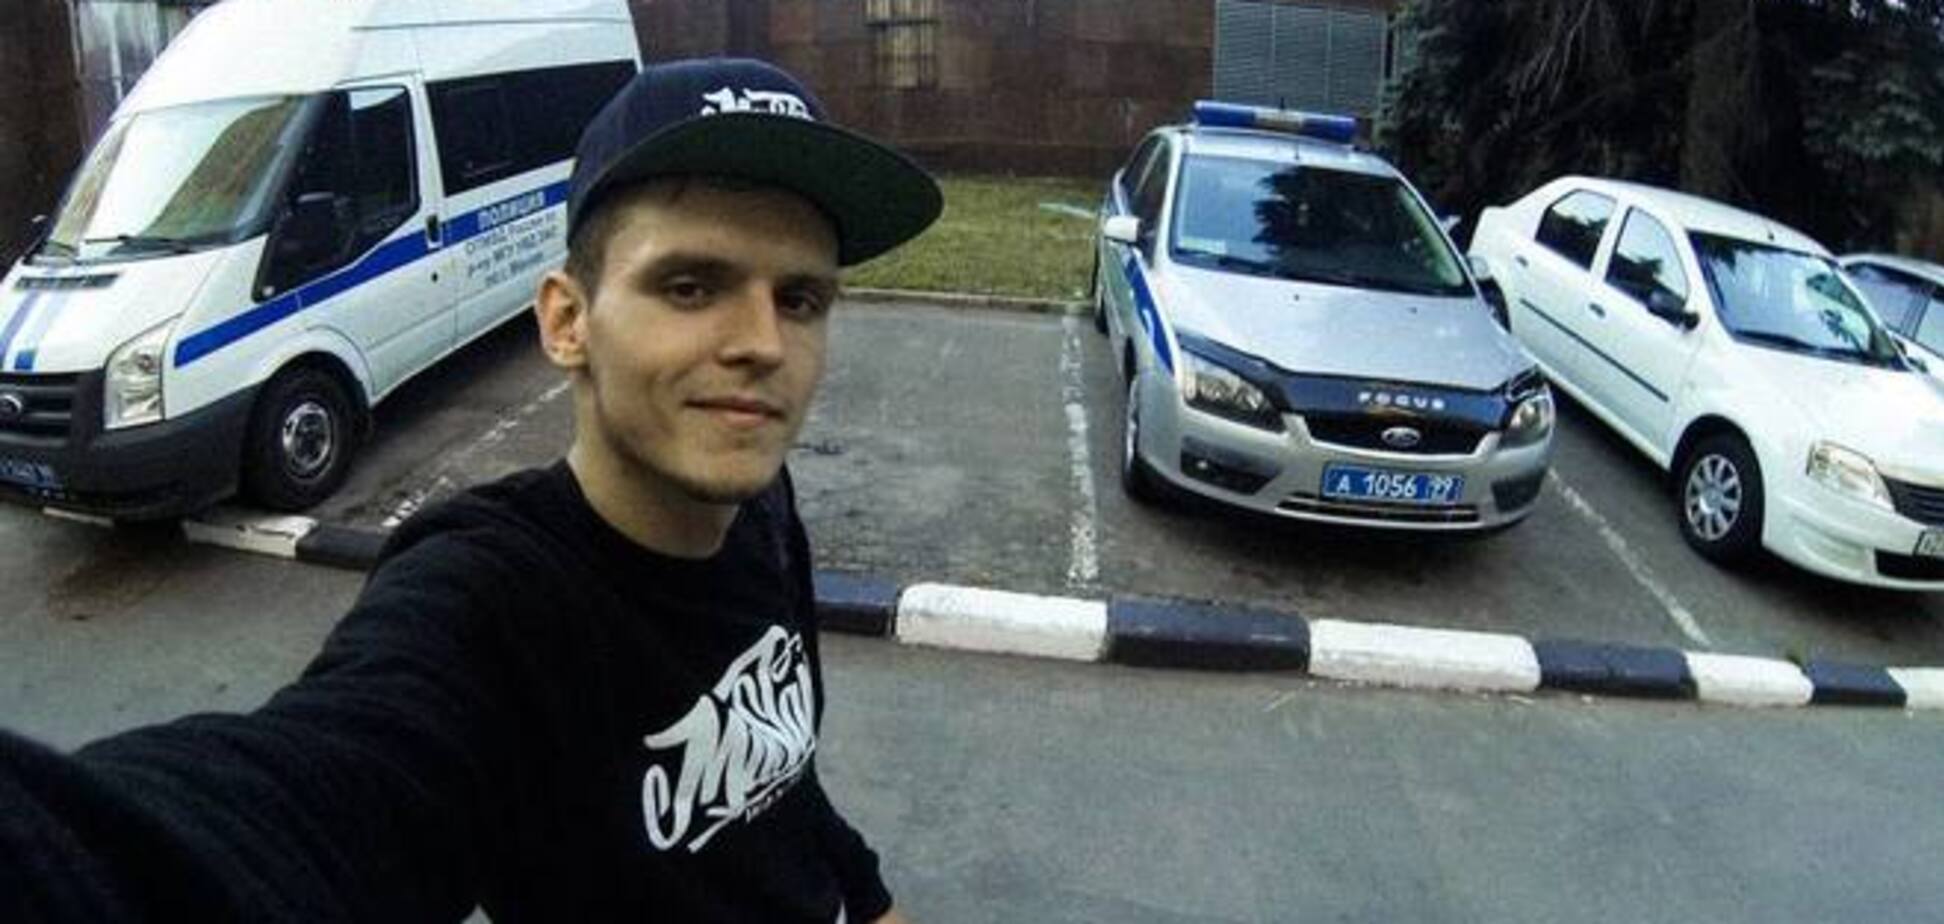 Руфер Мустанг 'троллит' московскую полицию: в свой День рождения опубликовал селфи на фоне их авто